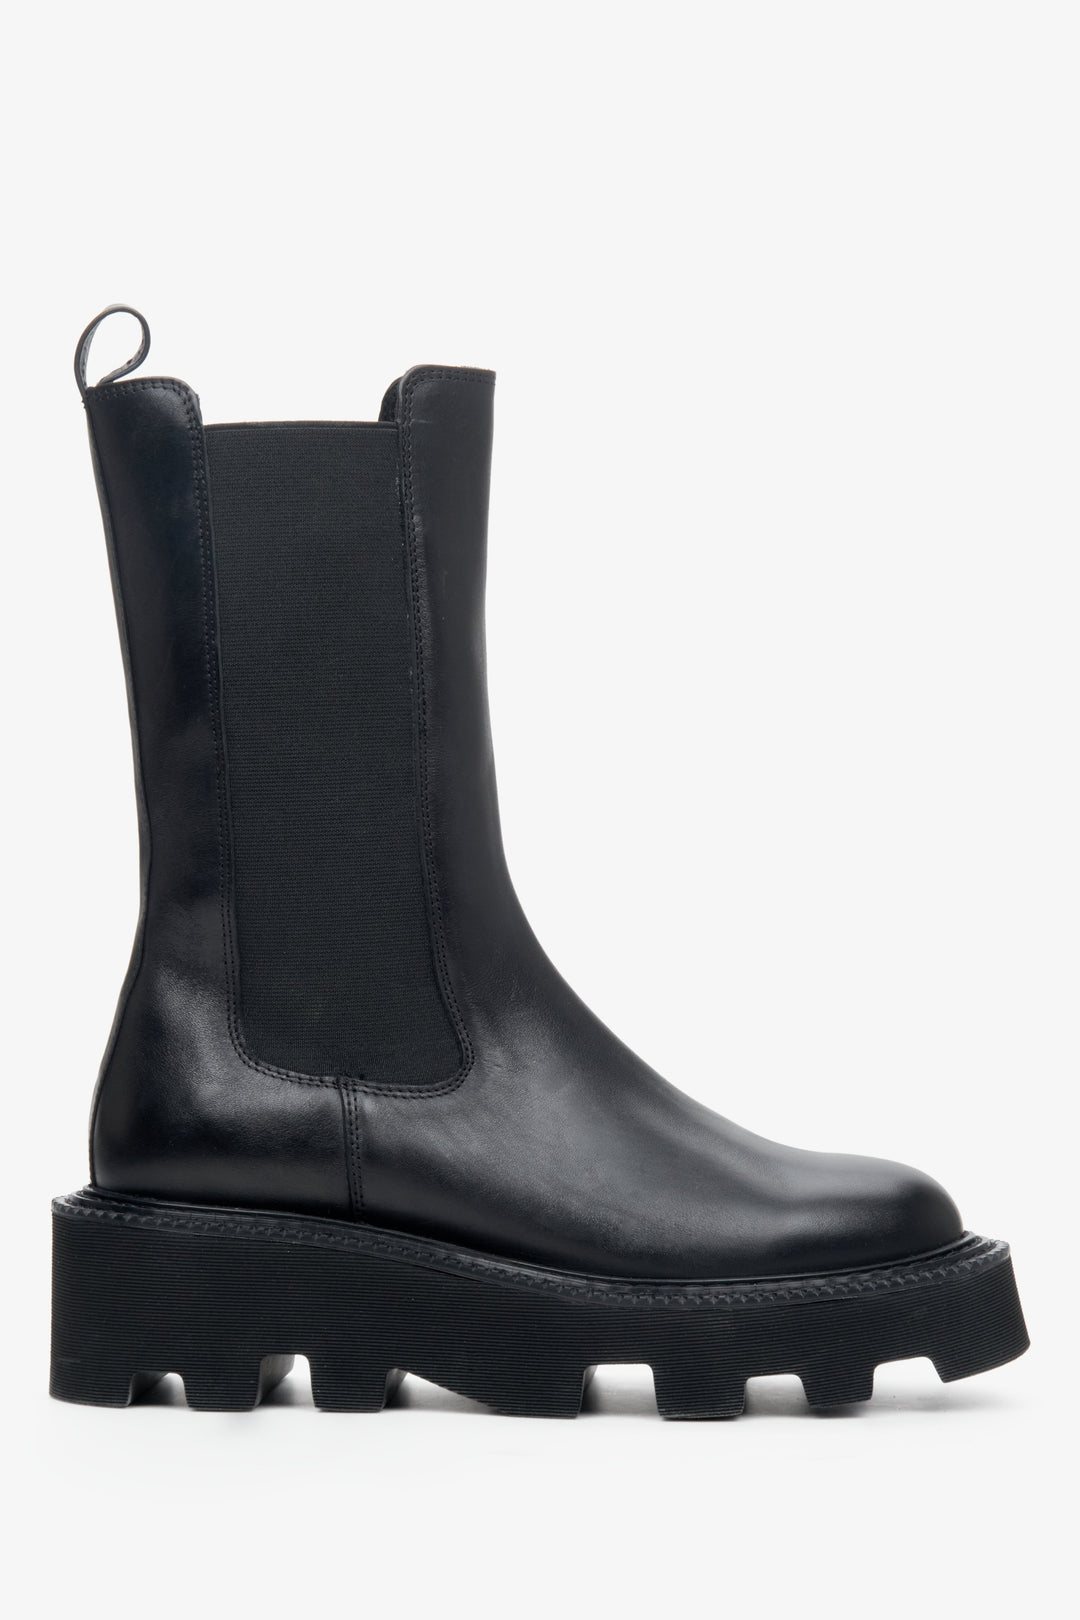 Damskie, wysokie sztyblety w kolorze czarnym marki Estro - profil buta.